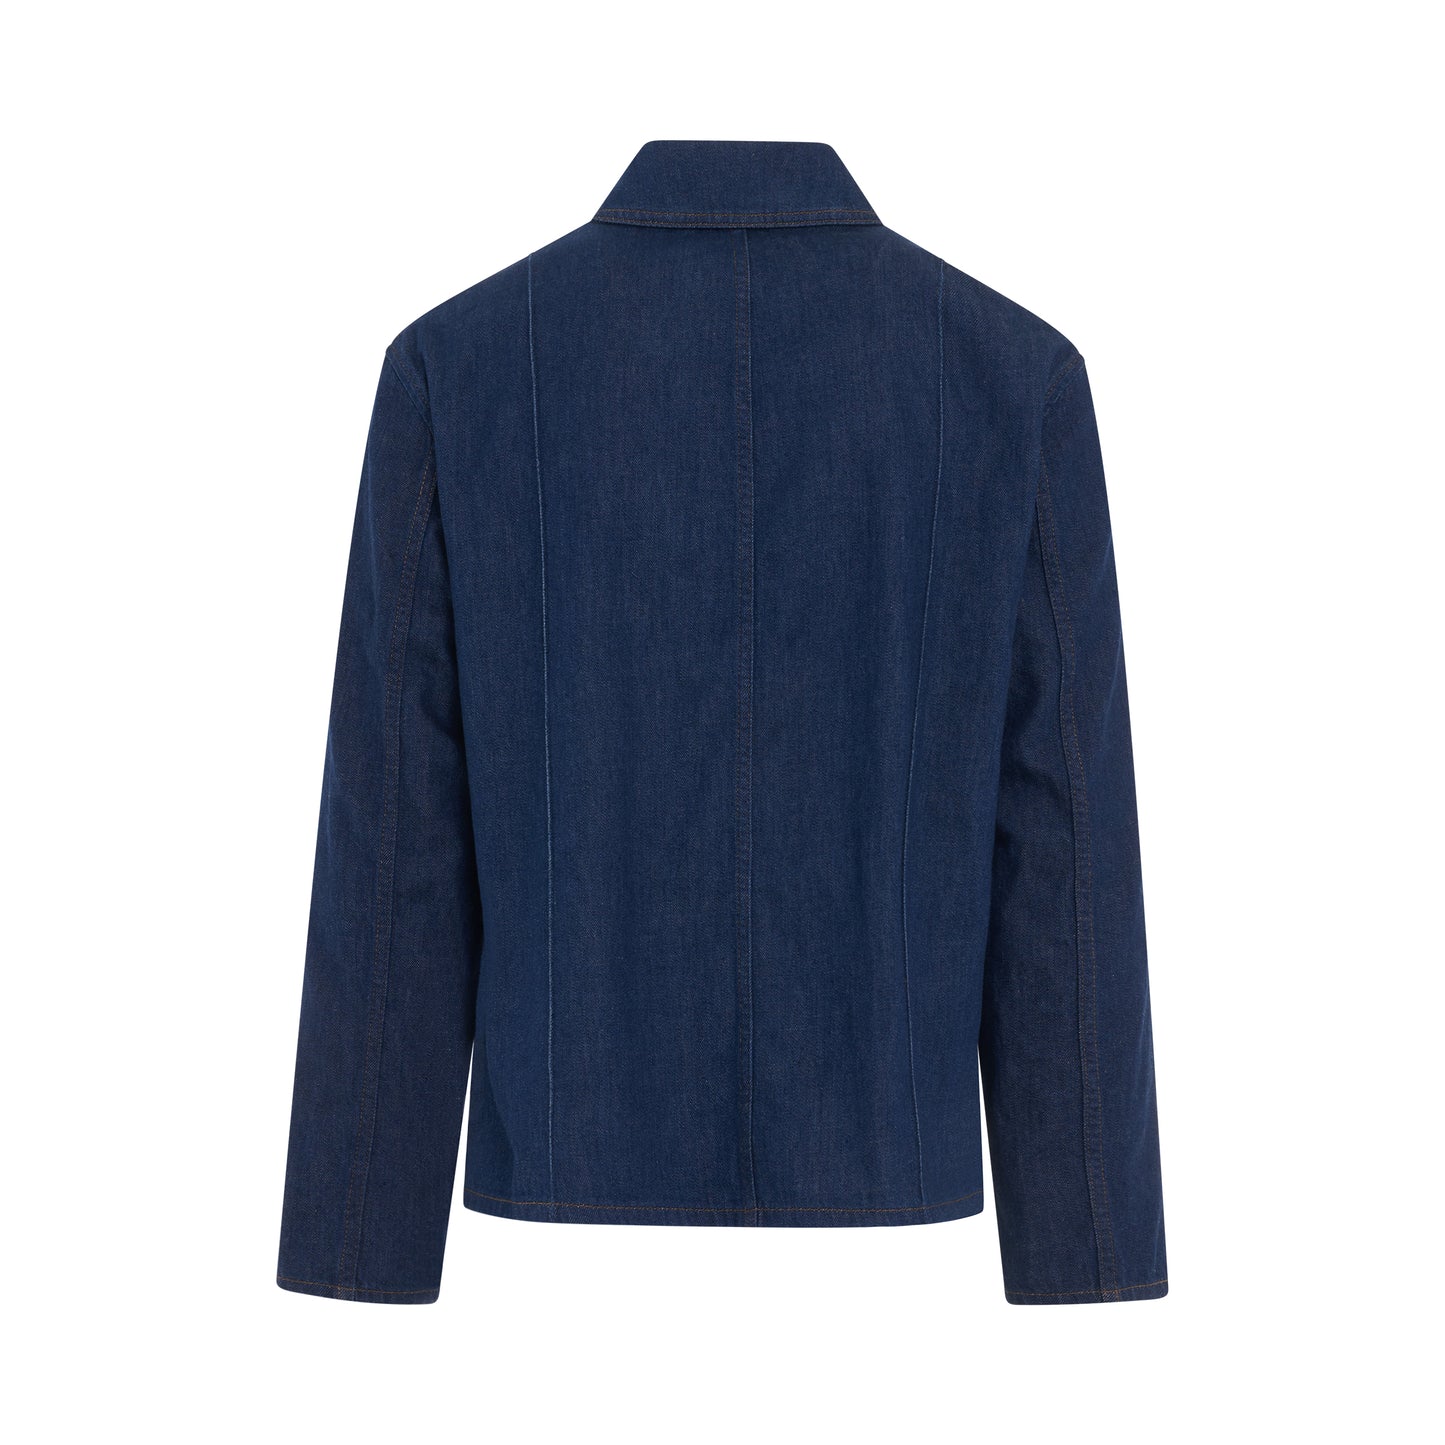 Workwear Denim Jacket in Navy Blue